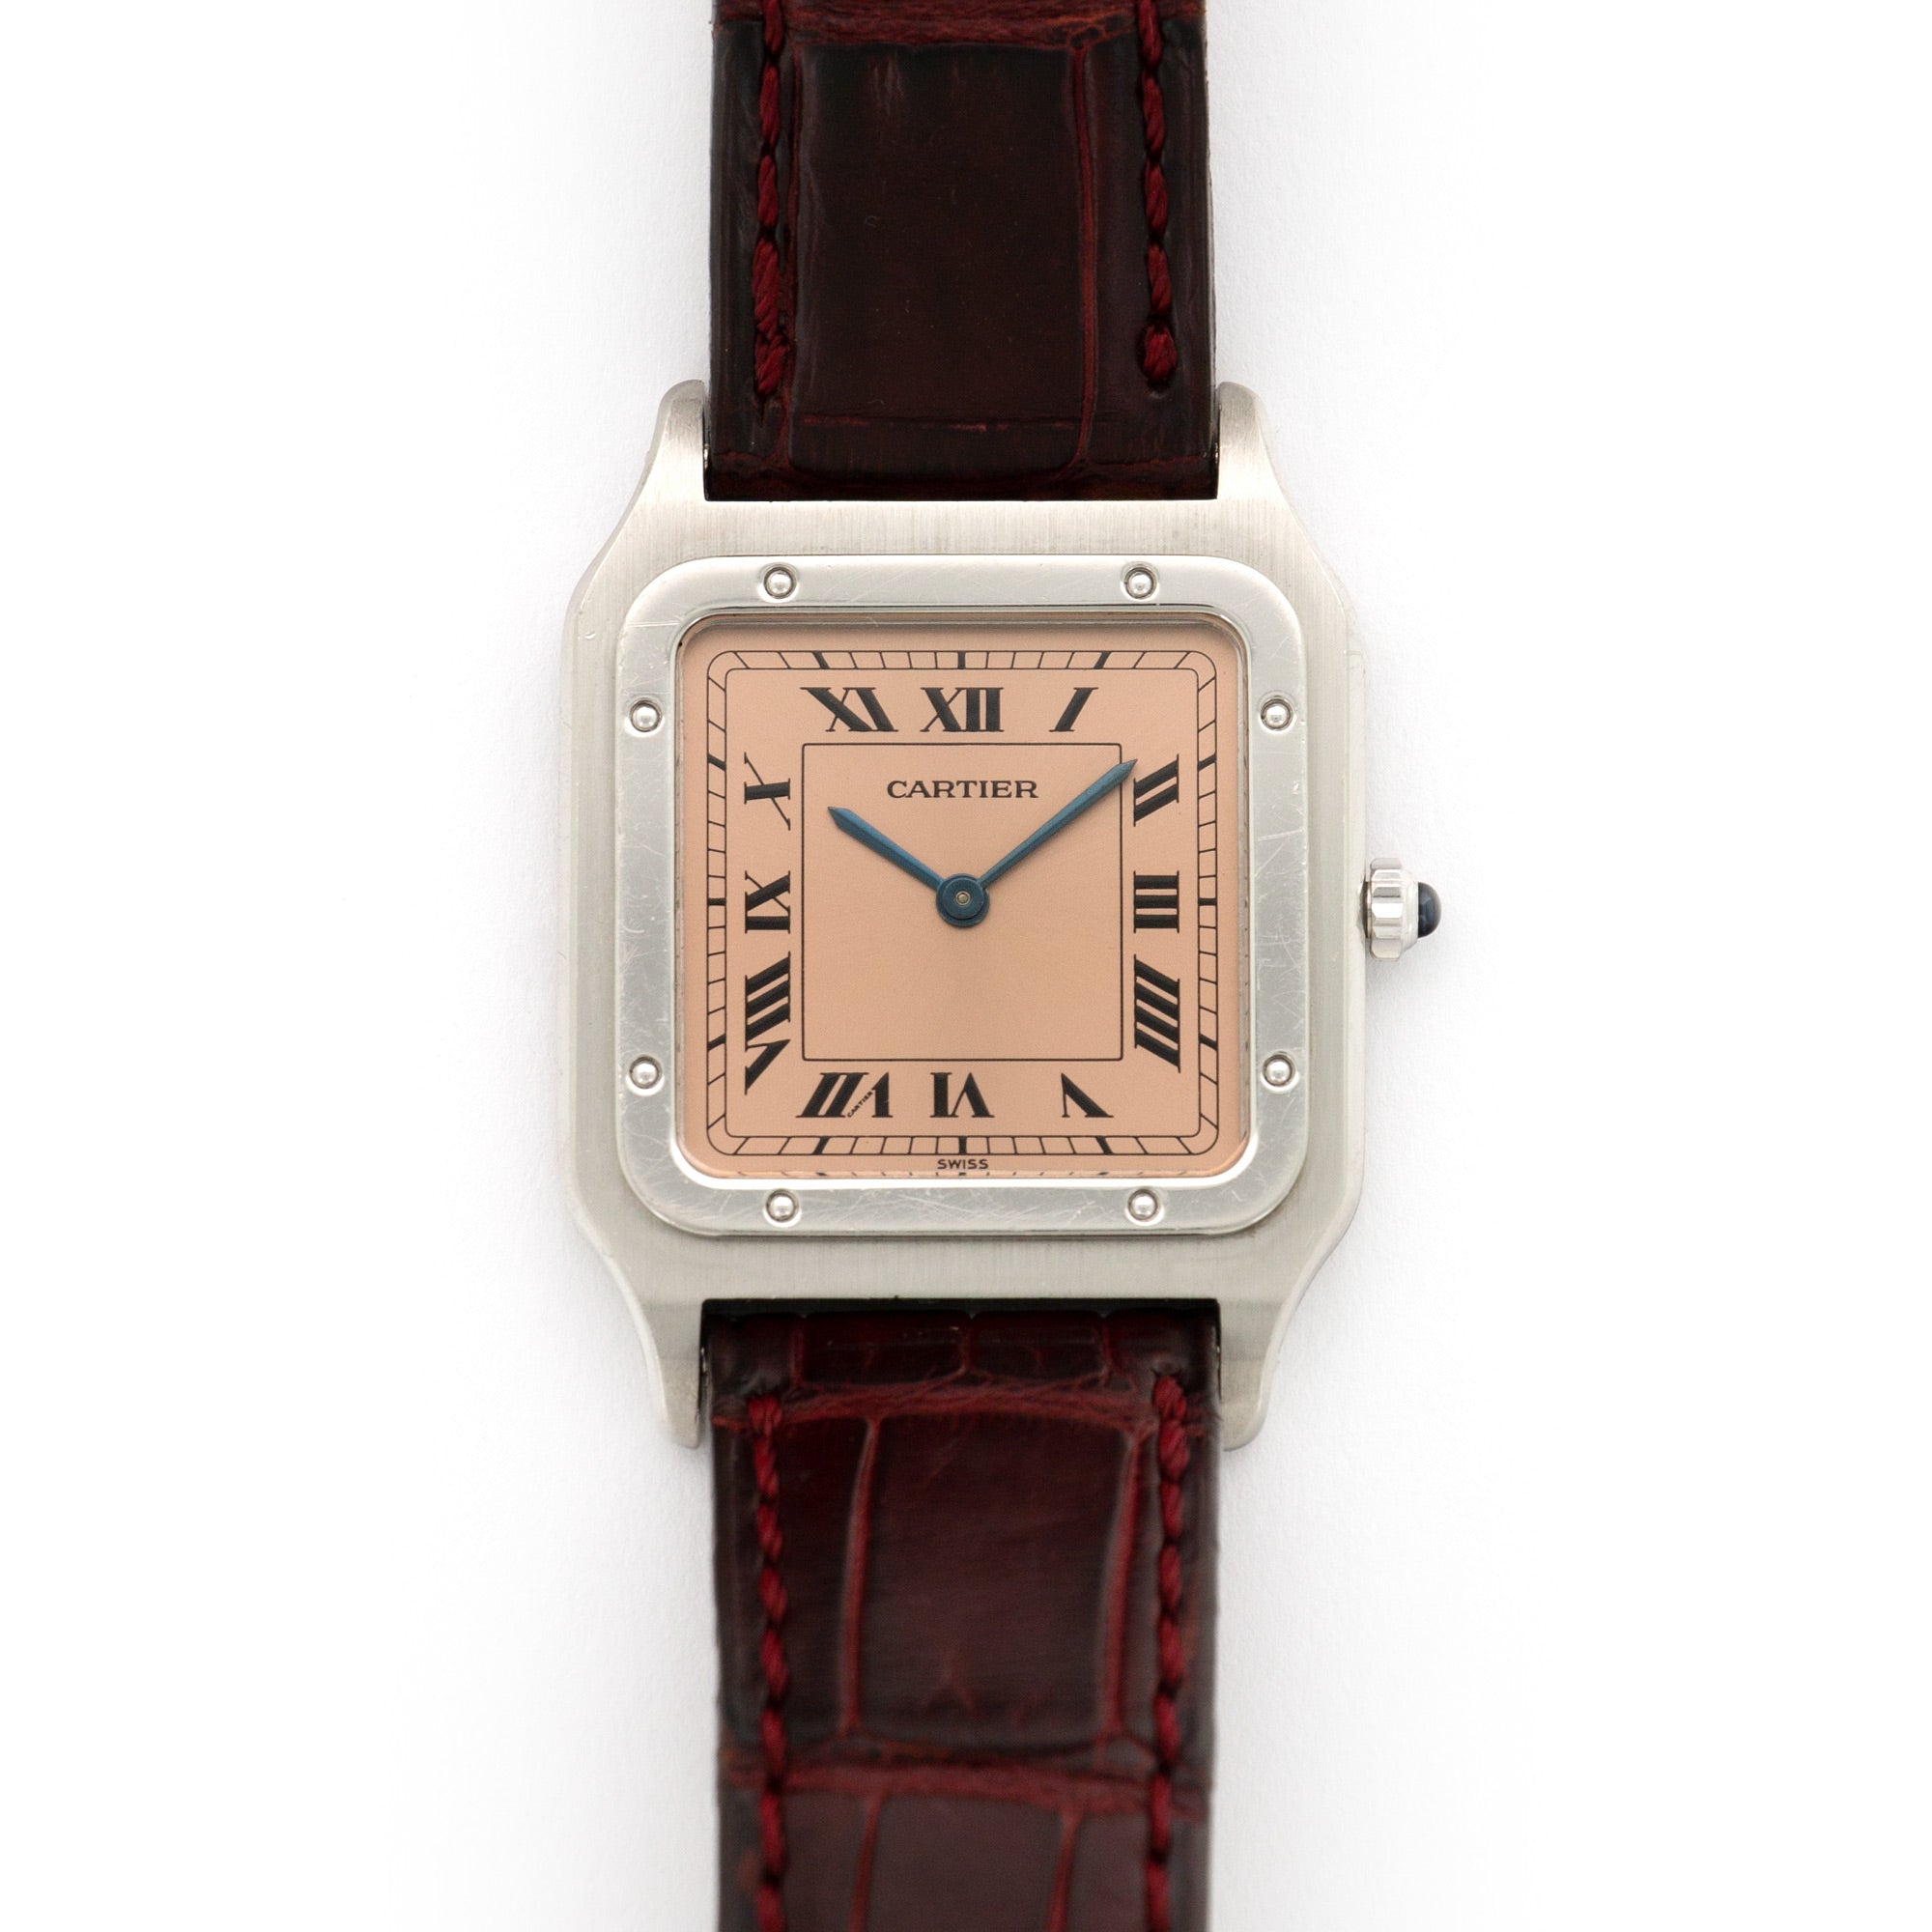 Cartier - Cartier Platinum Santos Dumont Watch, Ref. 1575 - The Keystone Watches